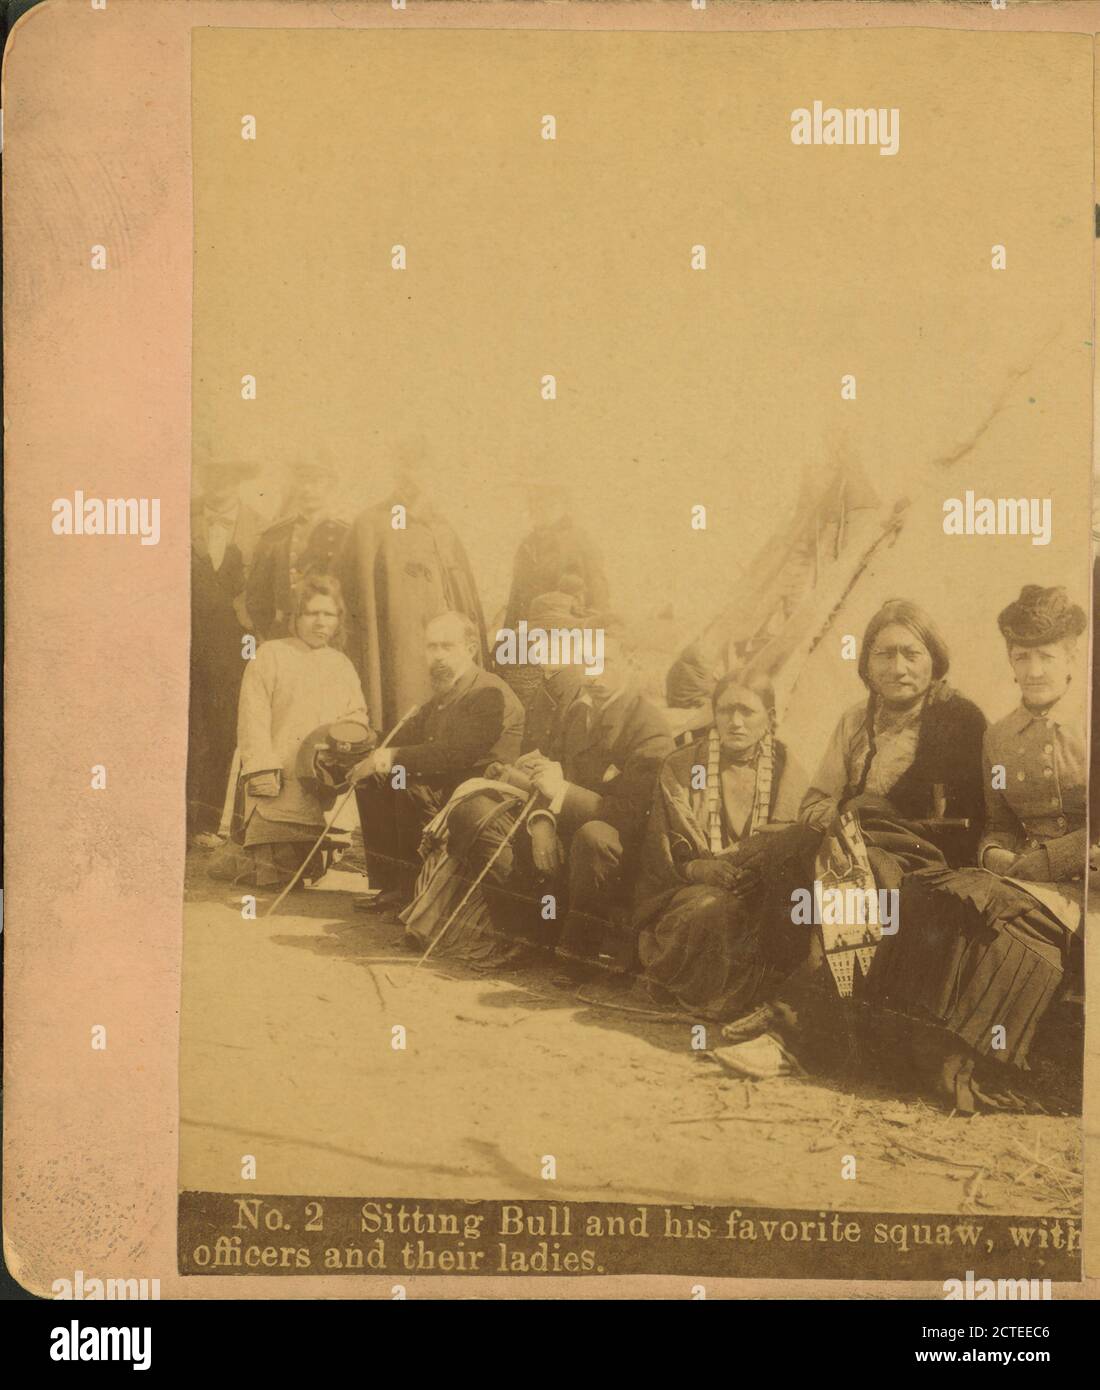 Sitting Bull et son squaw préféré, avec les officiers et leurs dames., Cross, W. R. (William R.), sitting Bull, 1834?-1890, Dakota du Nord Banque D'Images